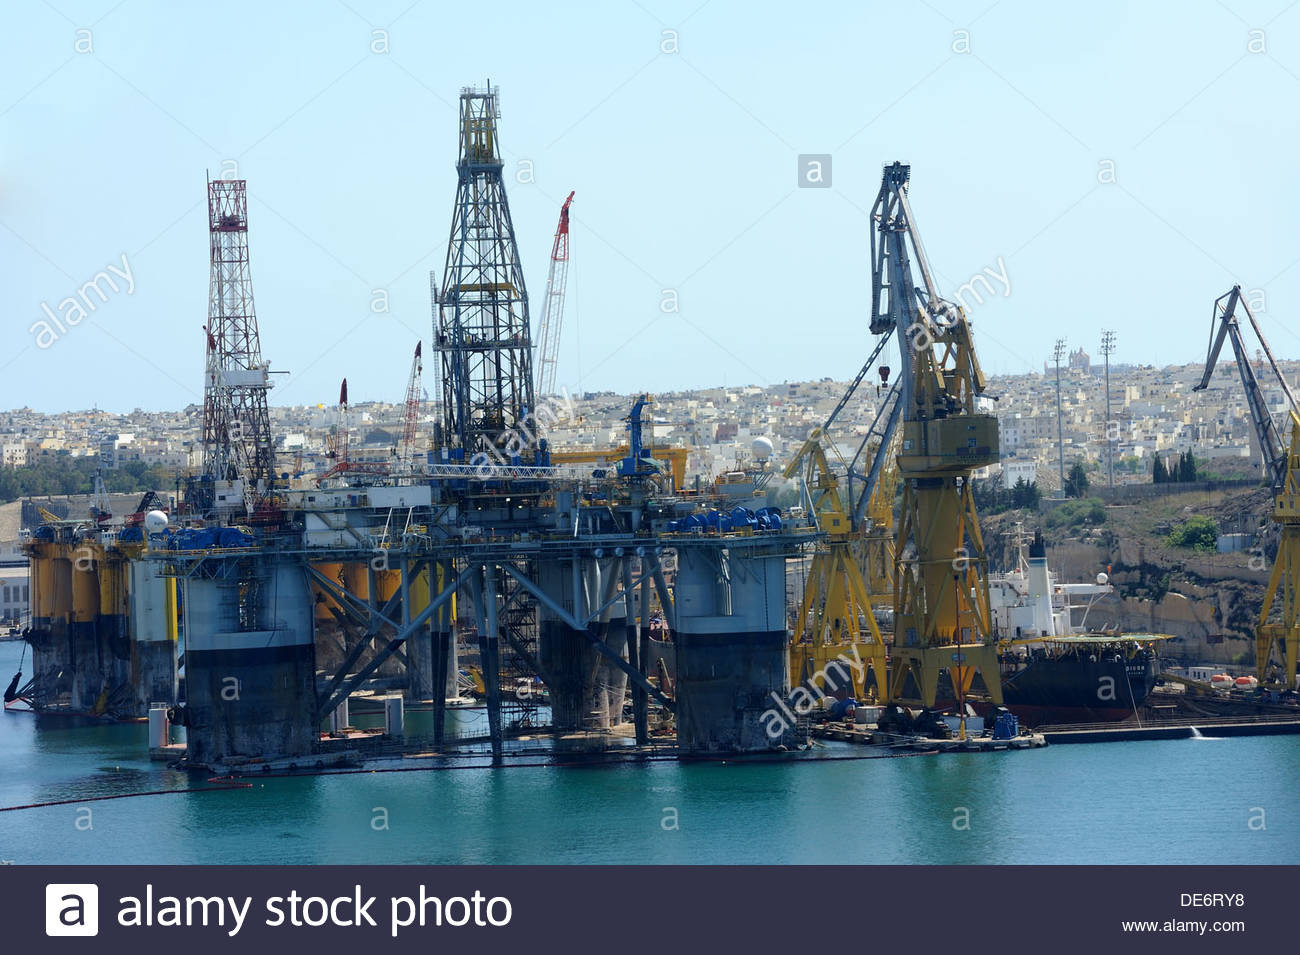 Valletta Malta Noble Paul Romano Oil rig at the Palumbo ...